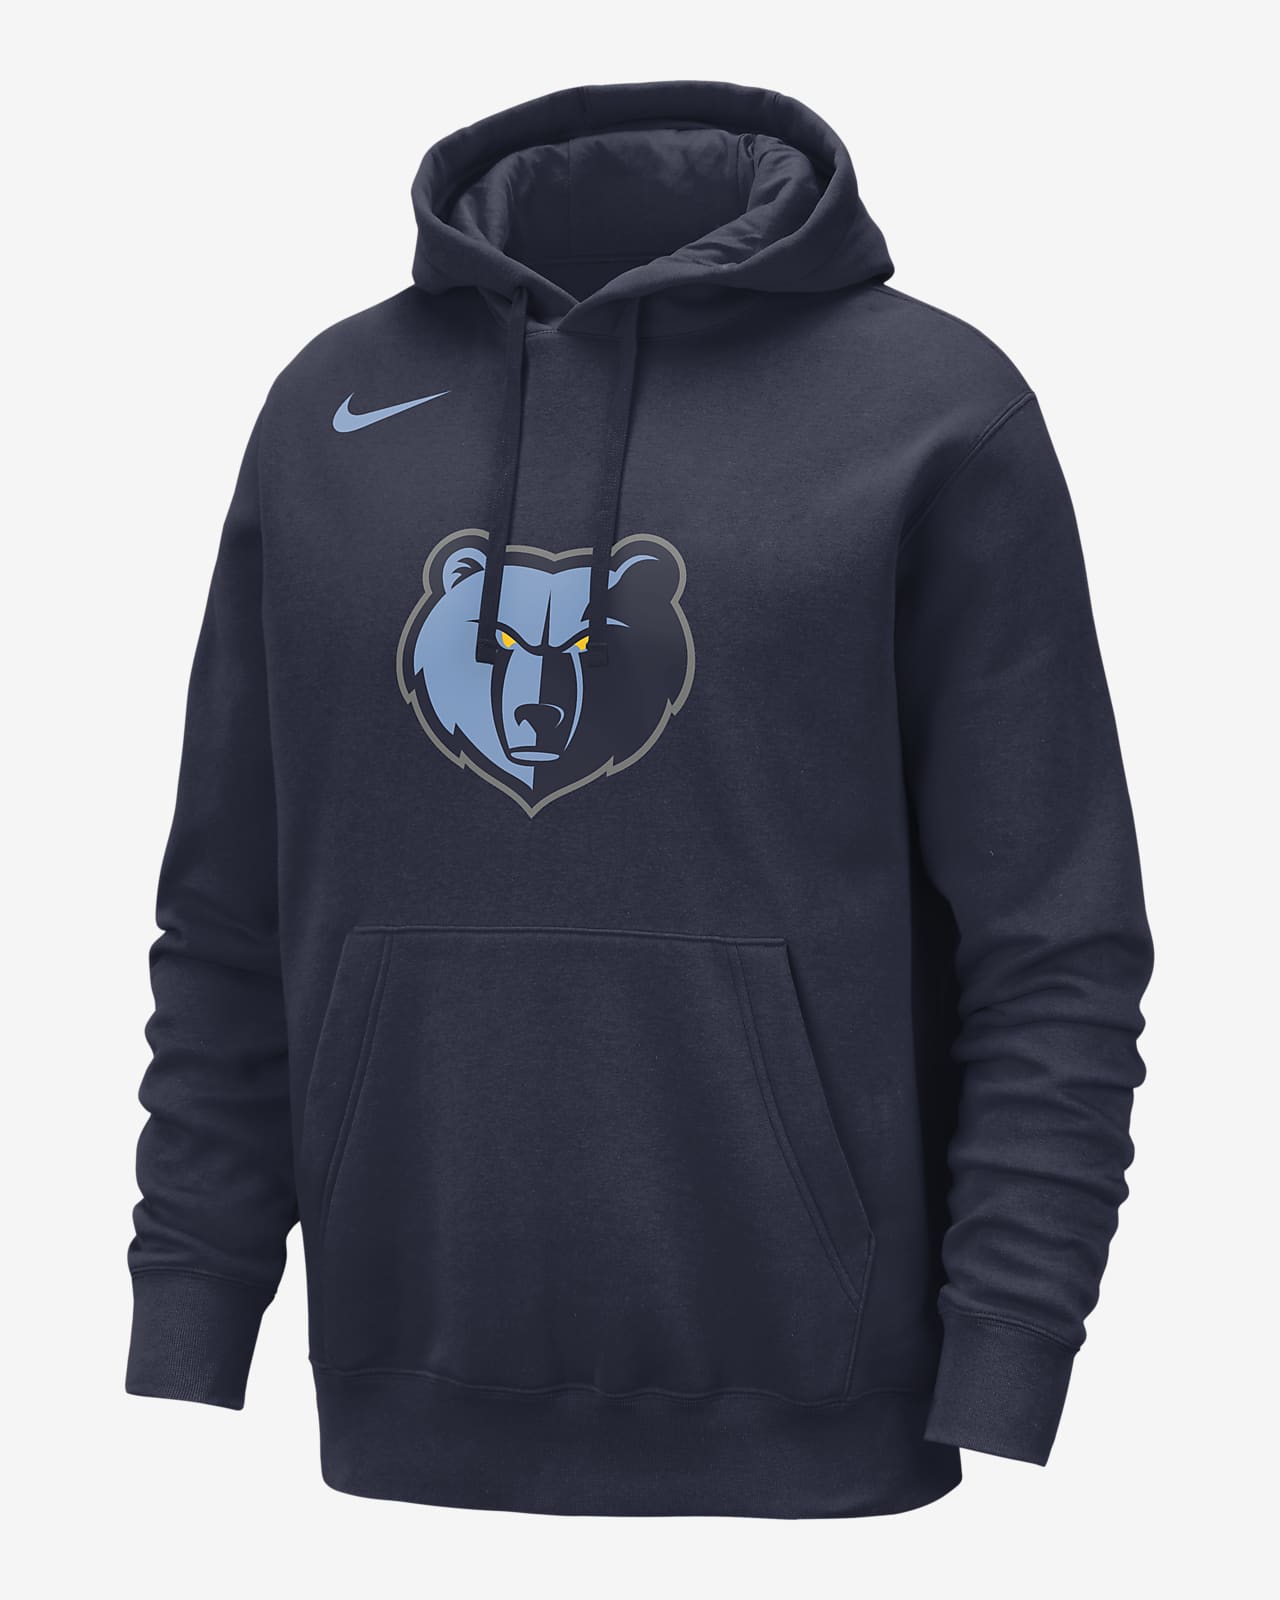 Memphis Grizzlies Club Nike NBA-pullover-hættetrøje i fleece til mænd